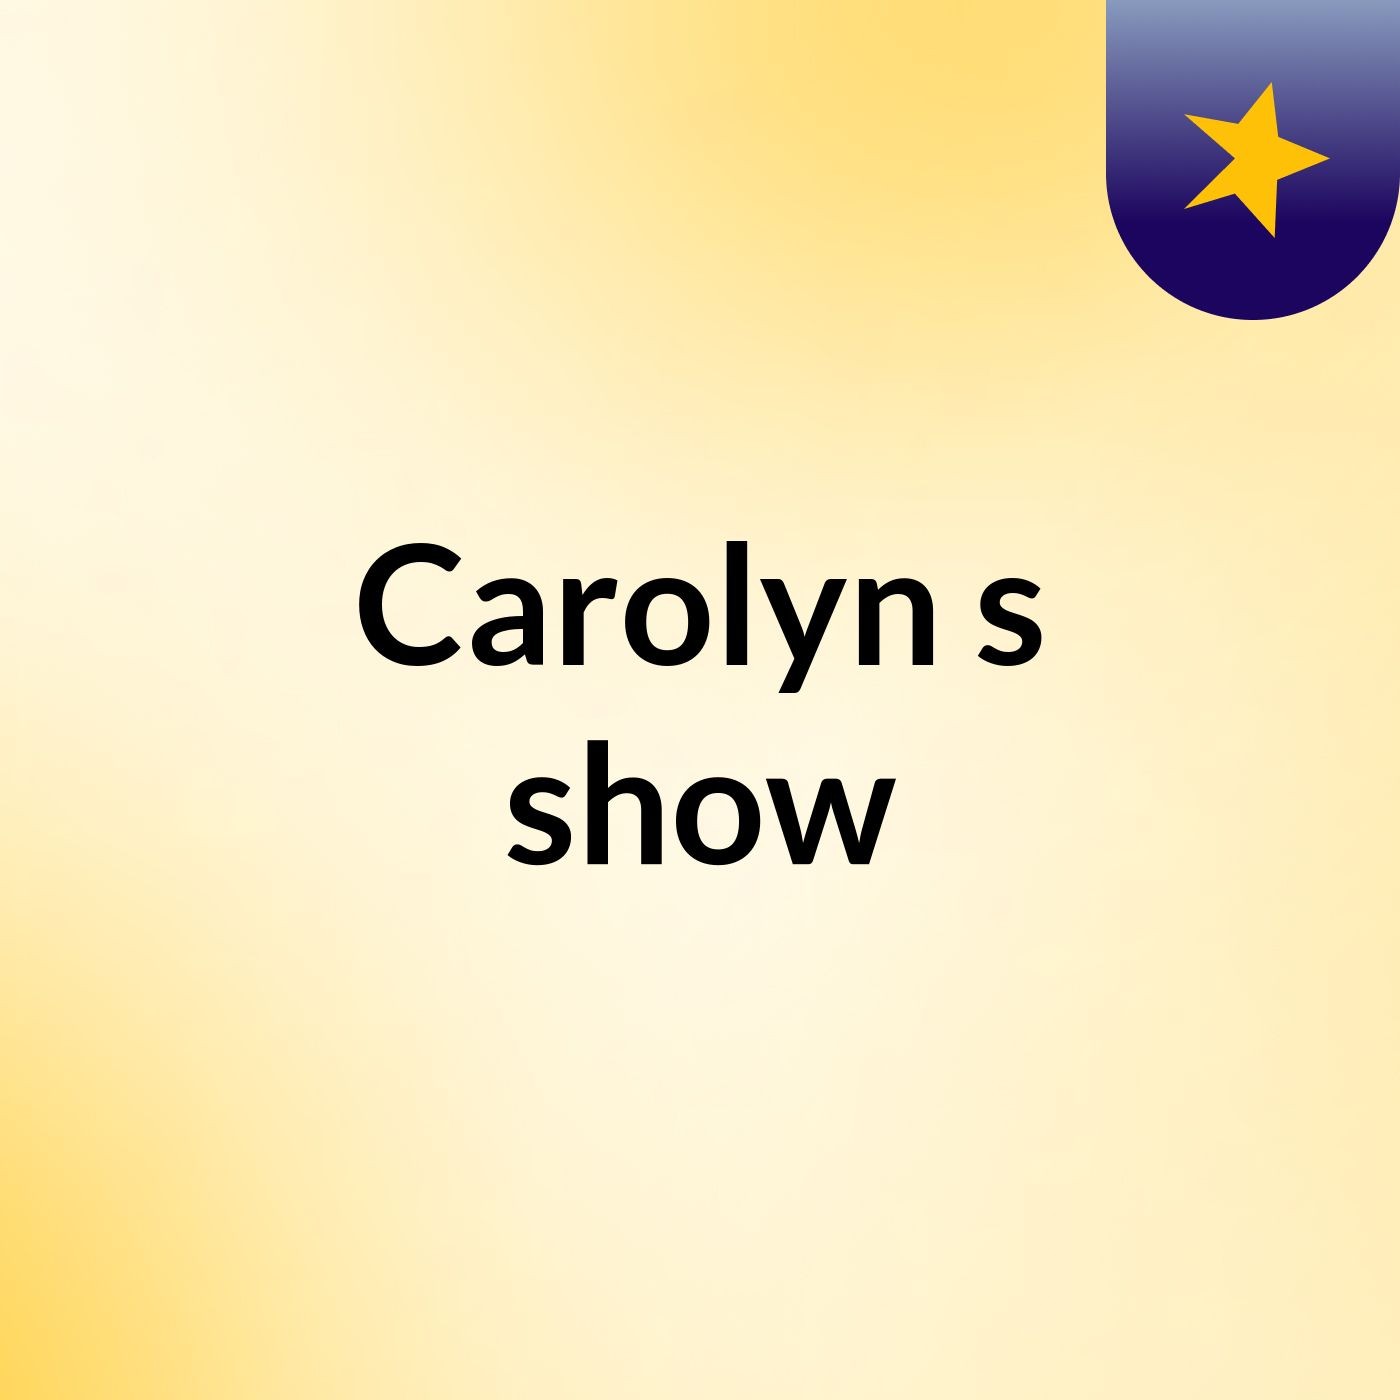 Carolyn's show